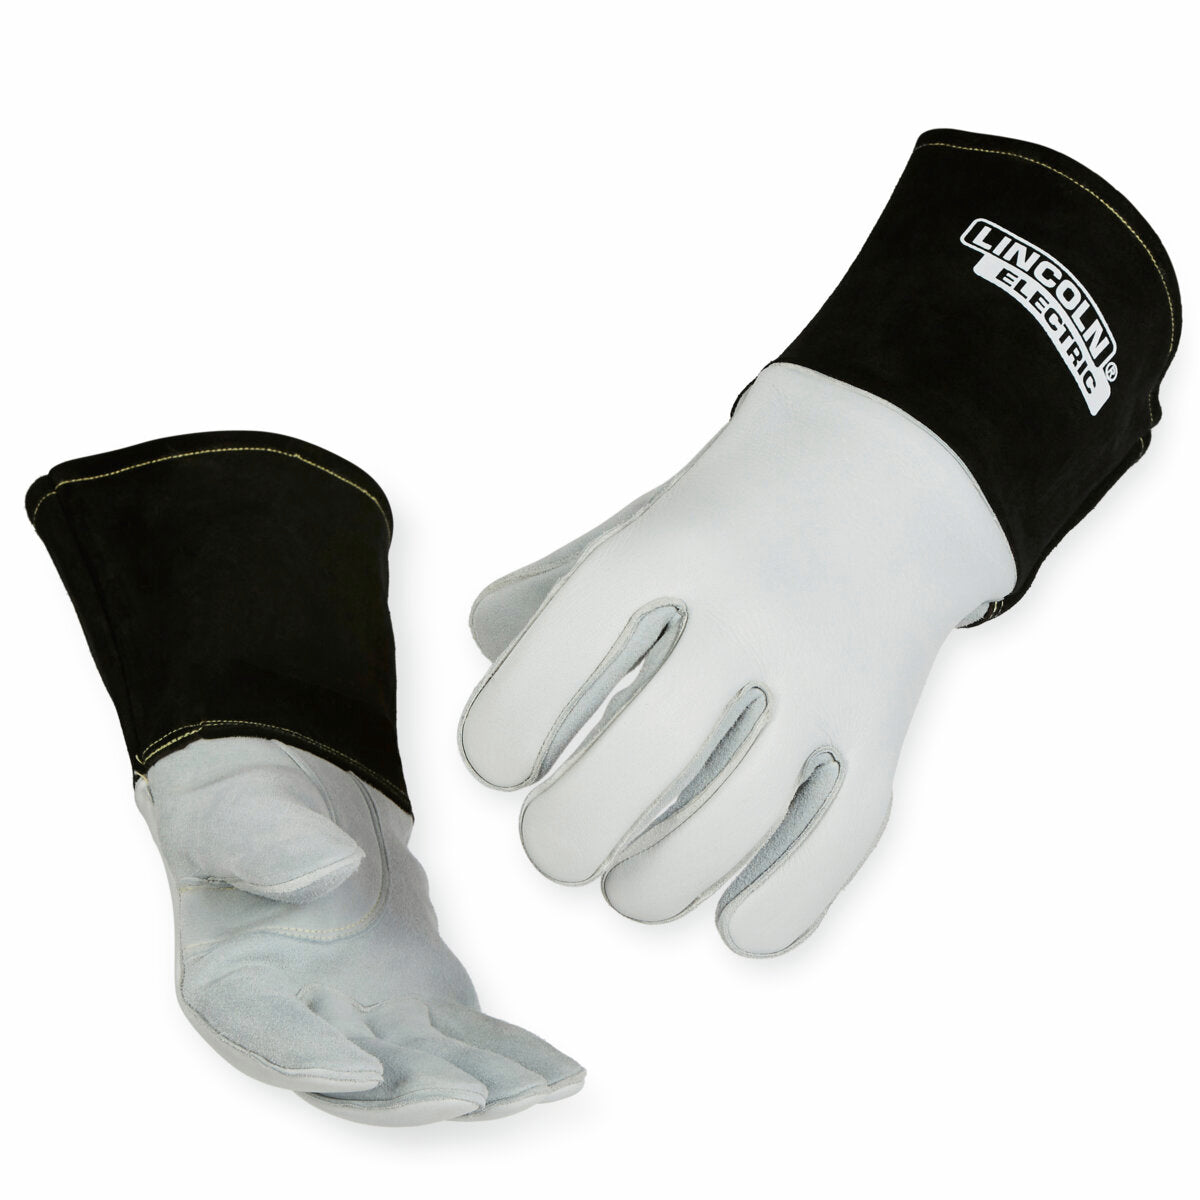 Premium 7 Series Elkskin Stick/MIG Welding Gloves - Large